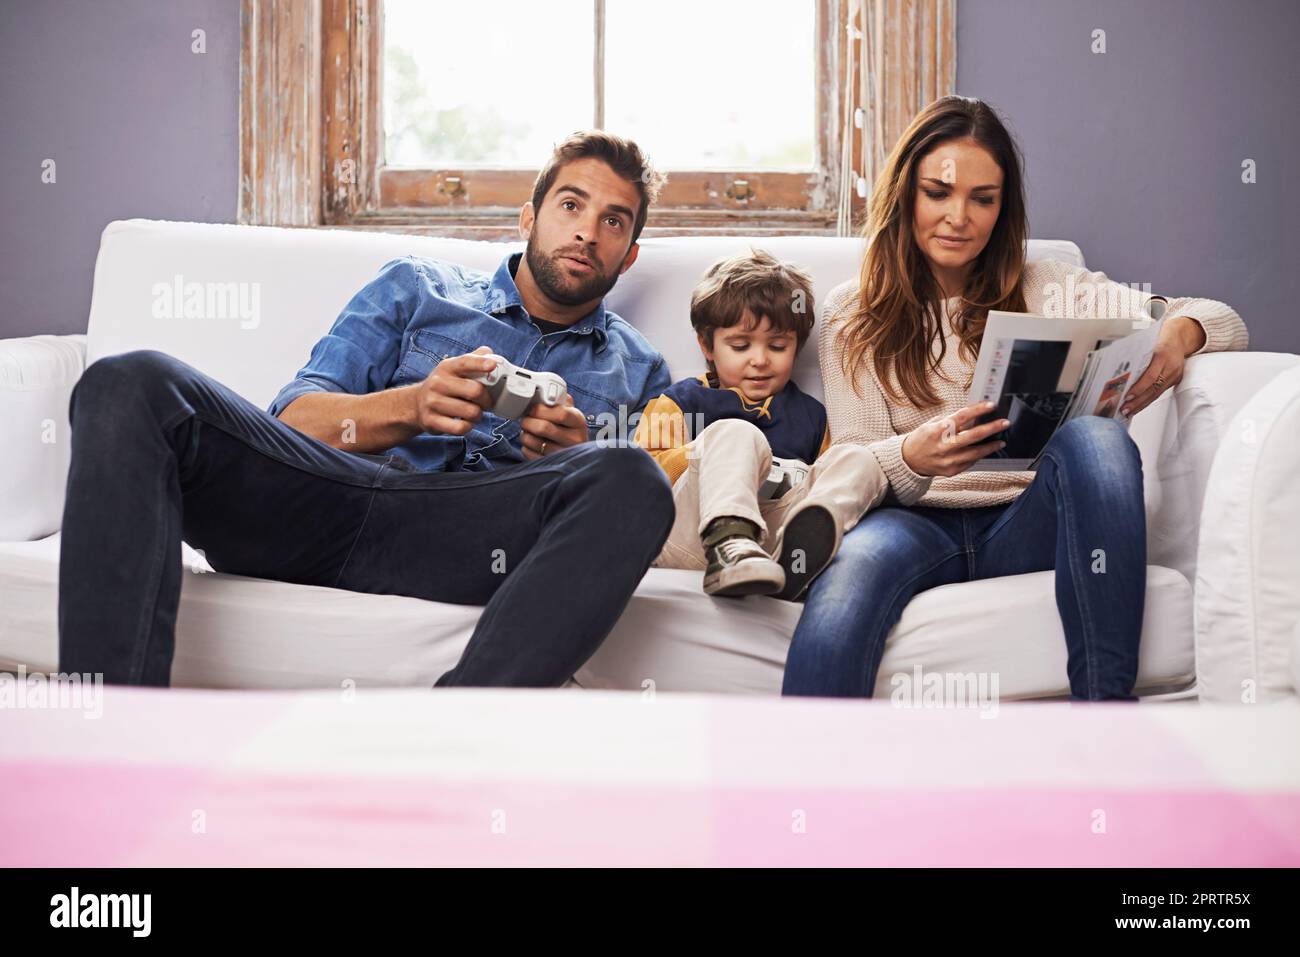 Zeit mit der Familie ist gut verbracht. Ein Sohn und sein Vater spielen zusammen ein Videospiel, während seine Mutter ein Magazin liest. Stockfoto